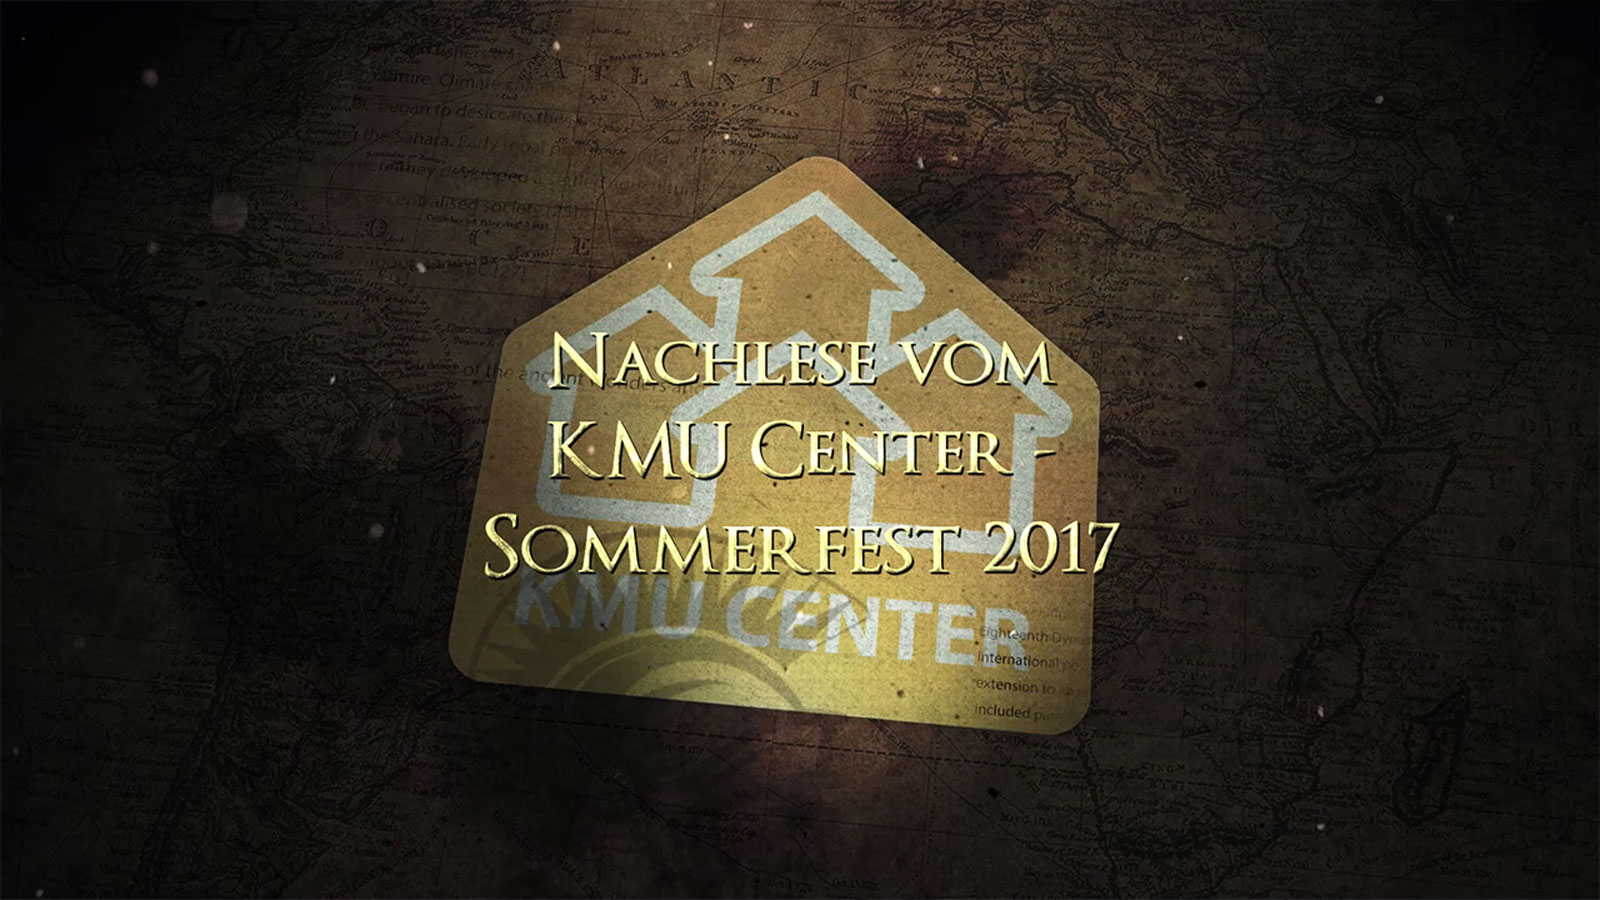 KMU Center Sommerfest 2017